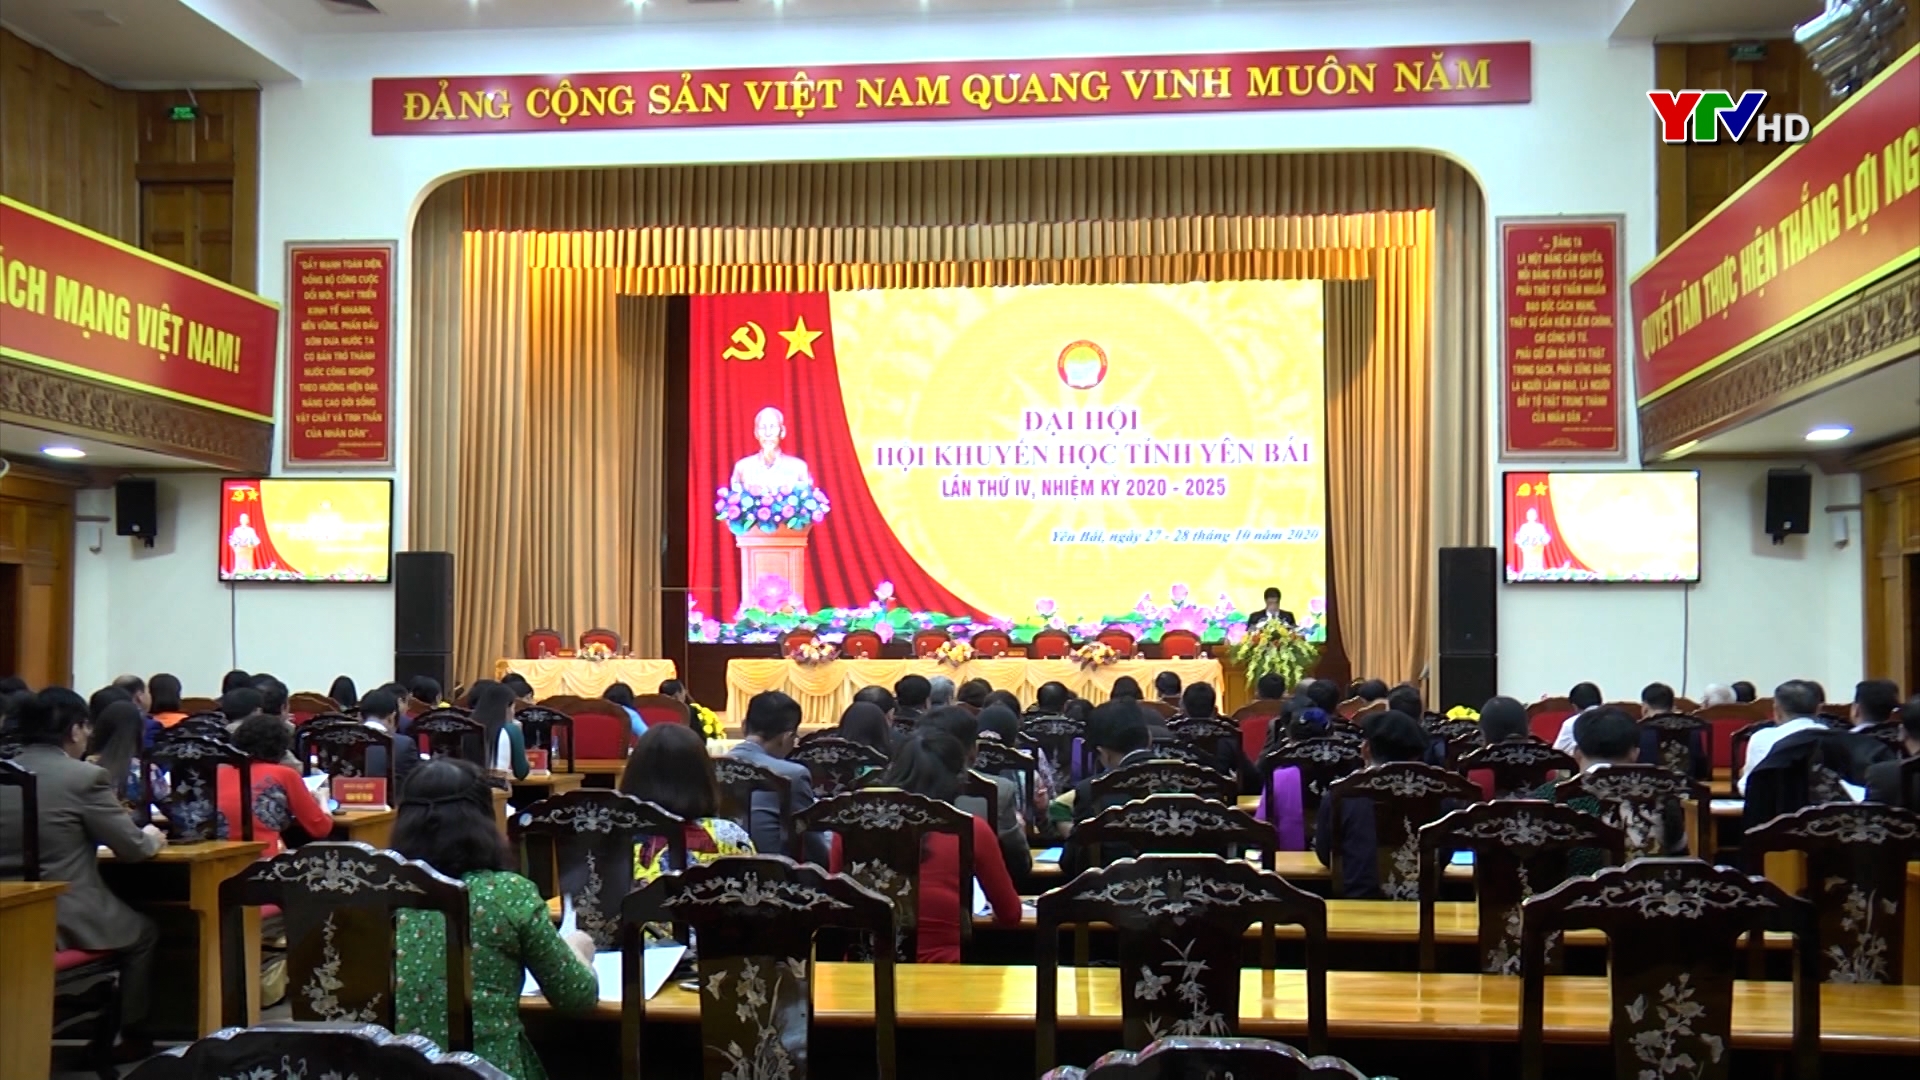 Phiên trù bị Đại hội Hội khuyến học tỉnh Yên Bái nhiệm kỳ 2020 – 2025